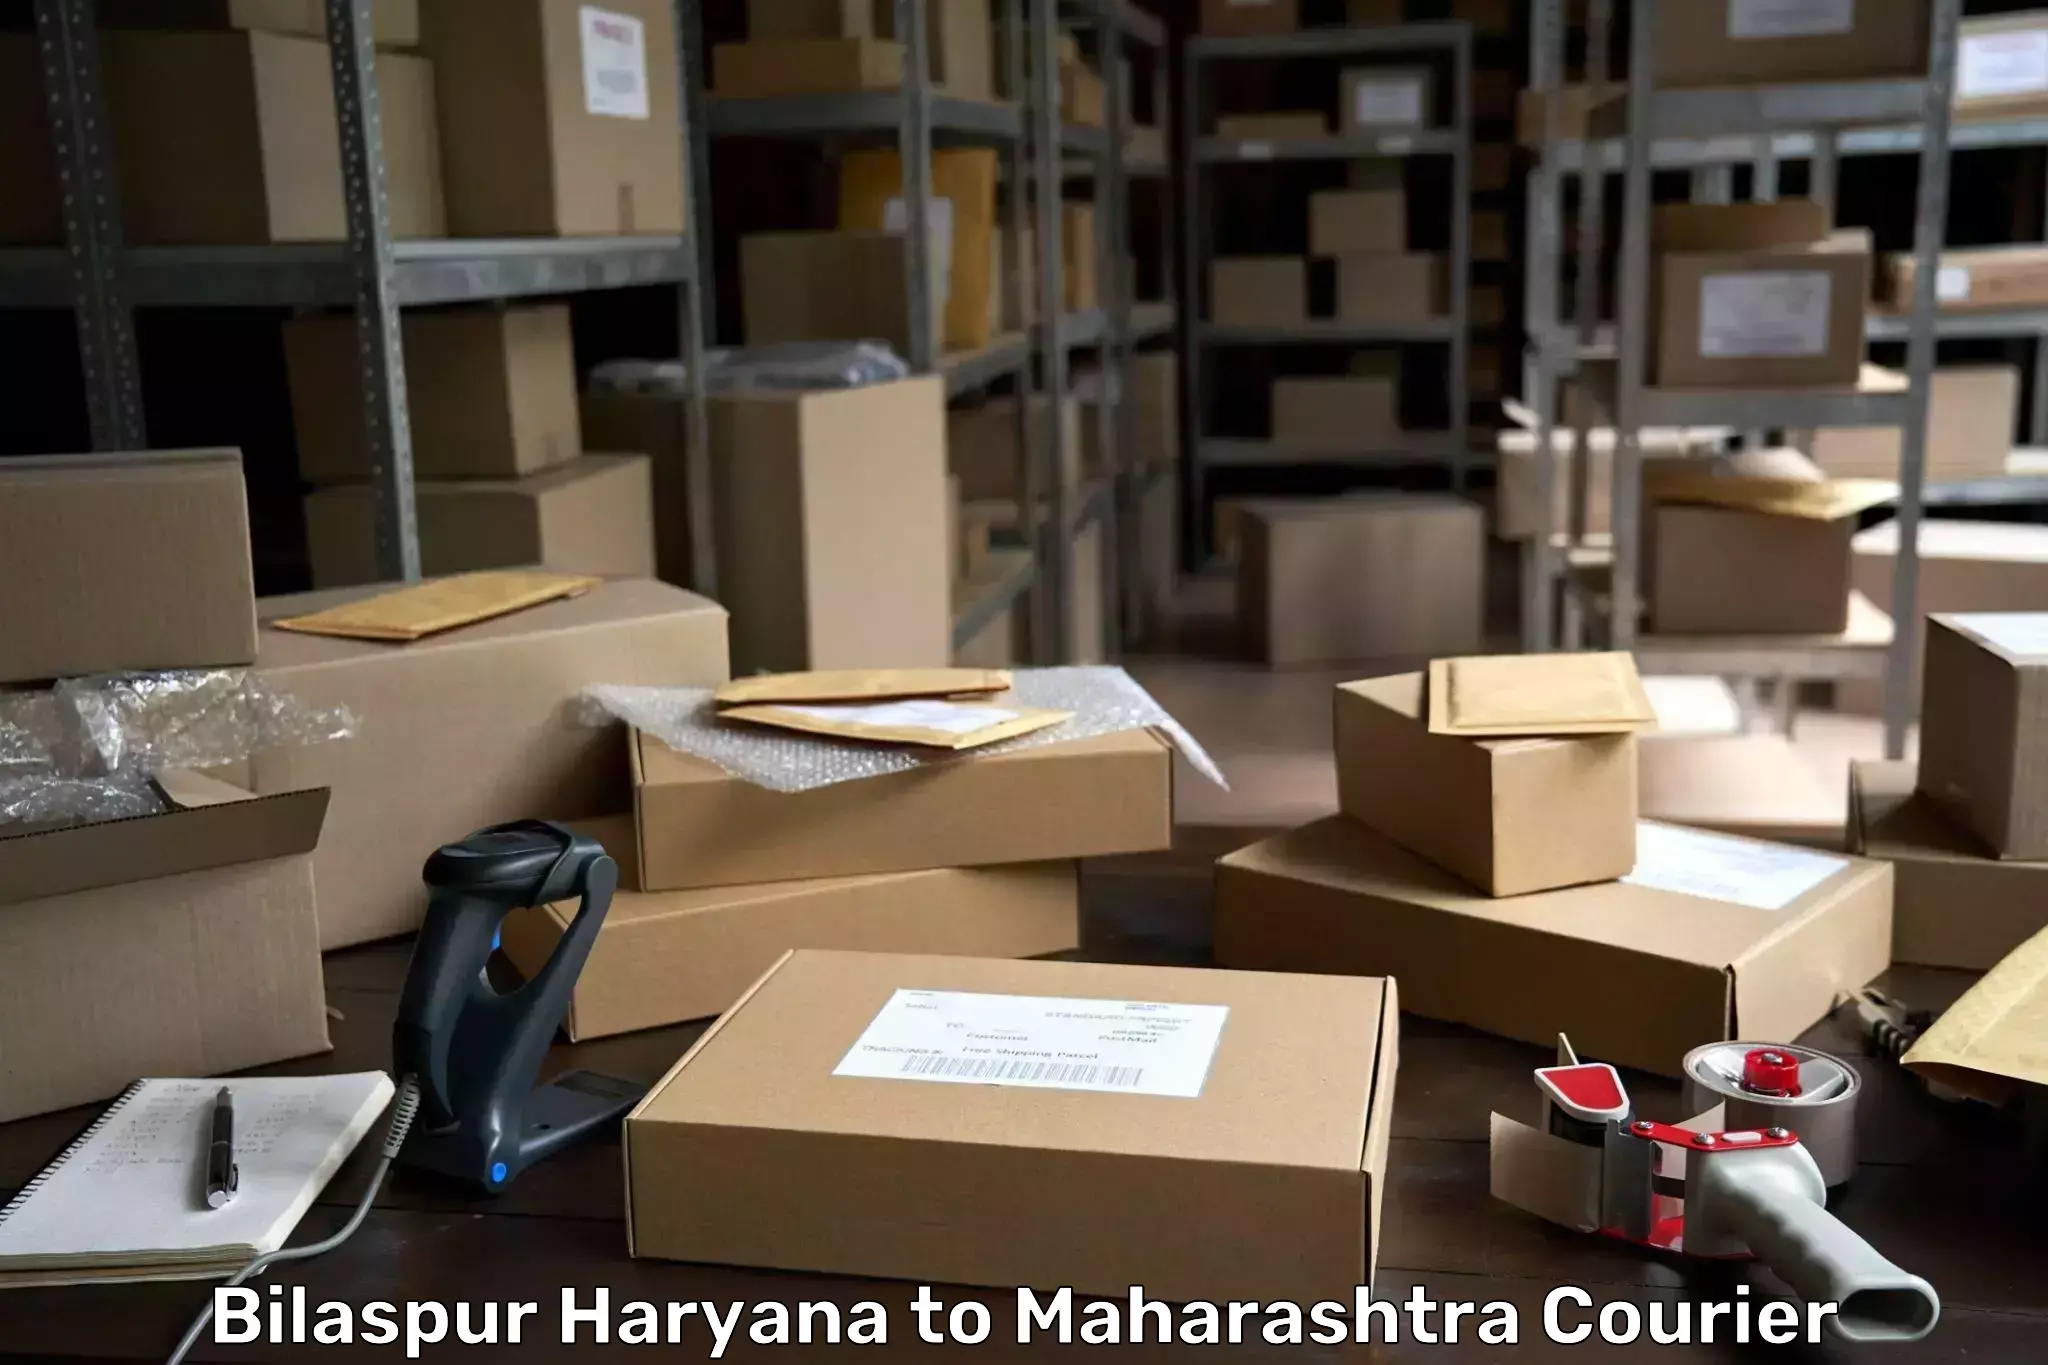 Trackable shipping service Bilaspur Haryana to Maharashtra